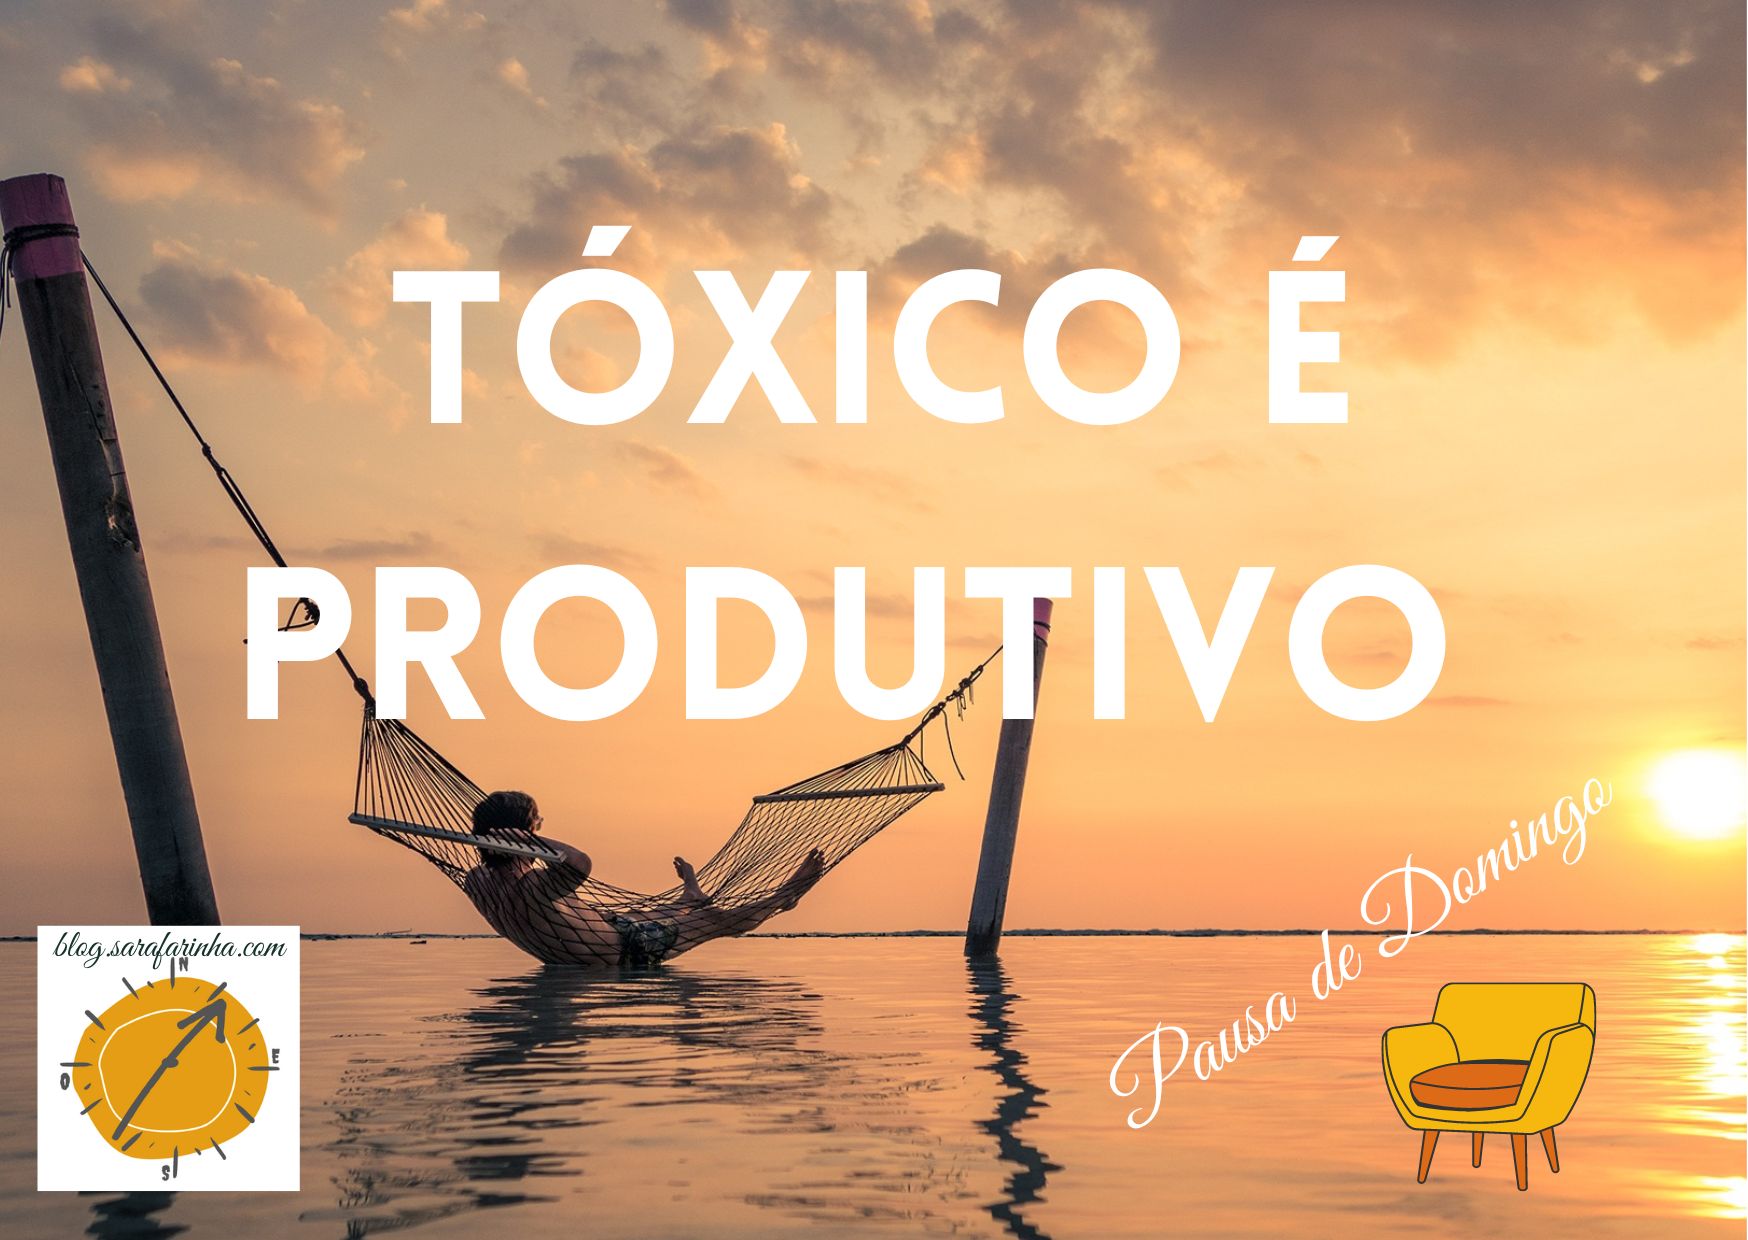 tóxico é produtivo